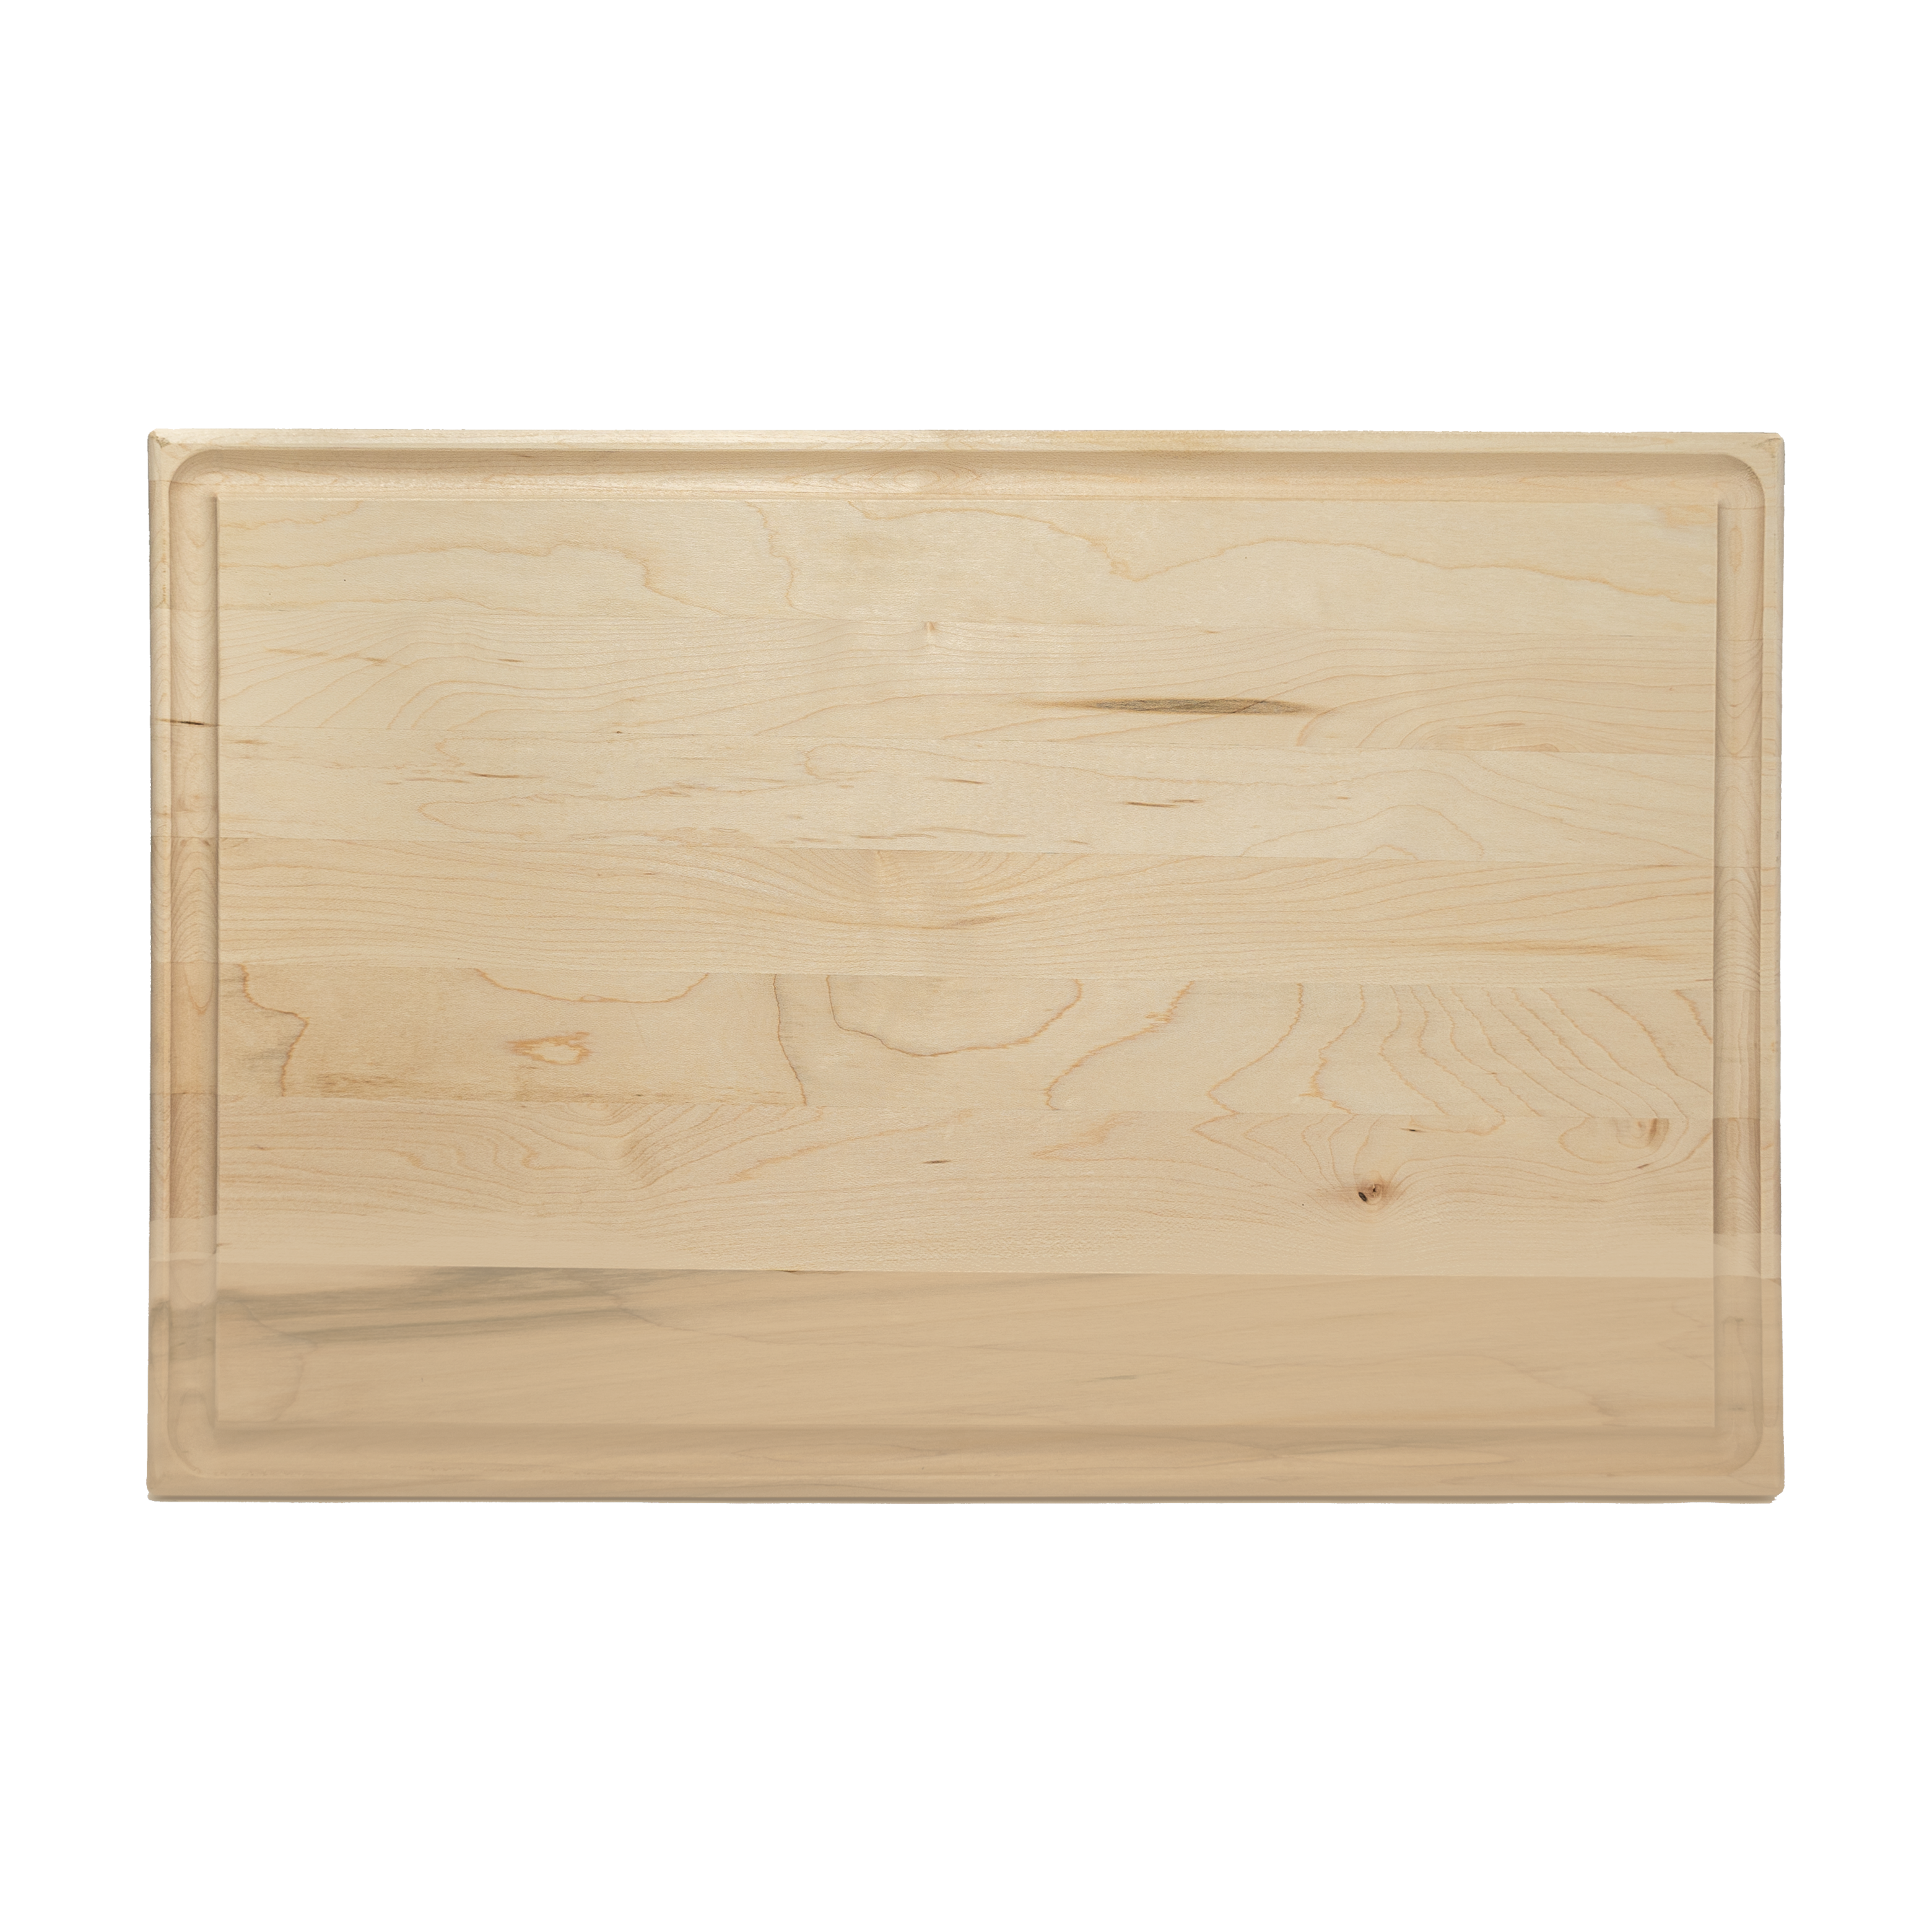 11x17 Rectangle Cutting Board